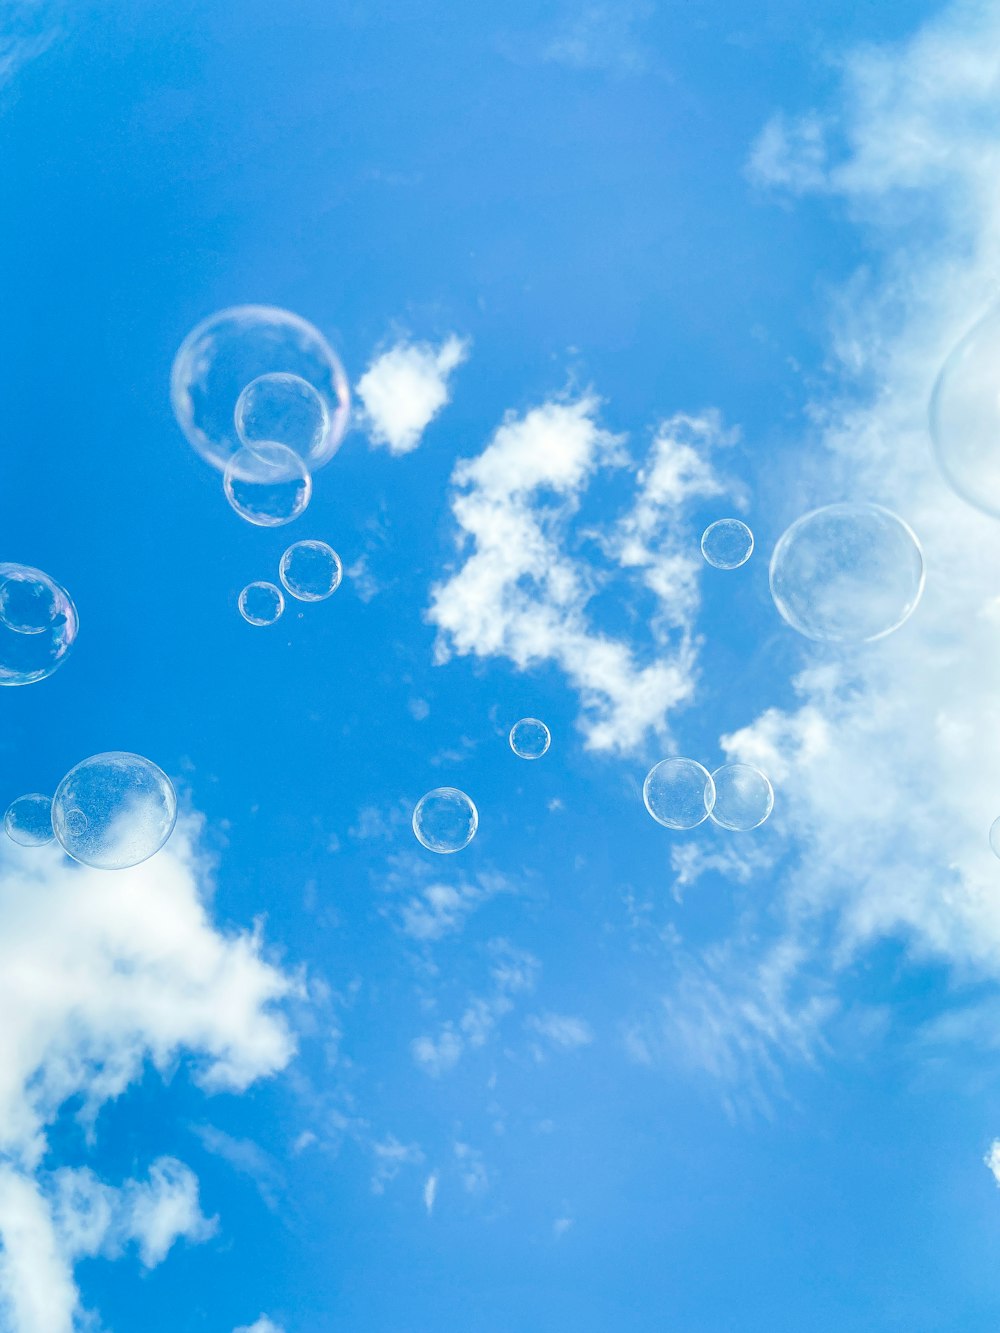 bolhas de sabão flutuando no ar em um dia ensolarado